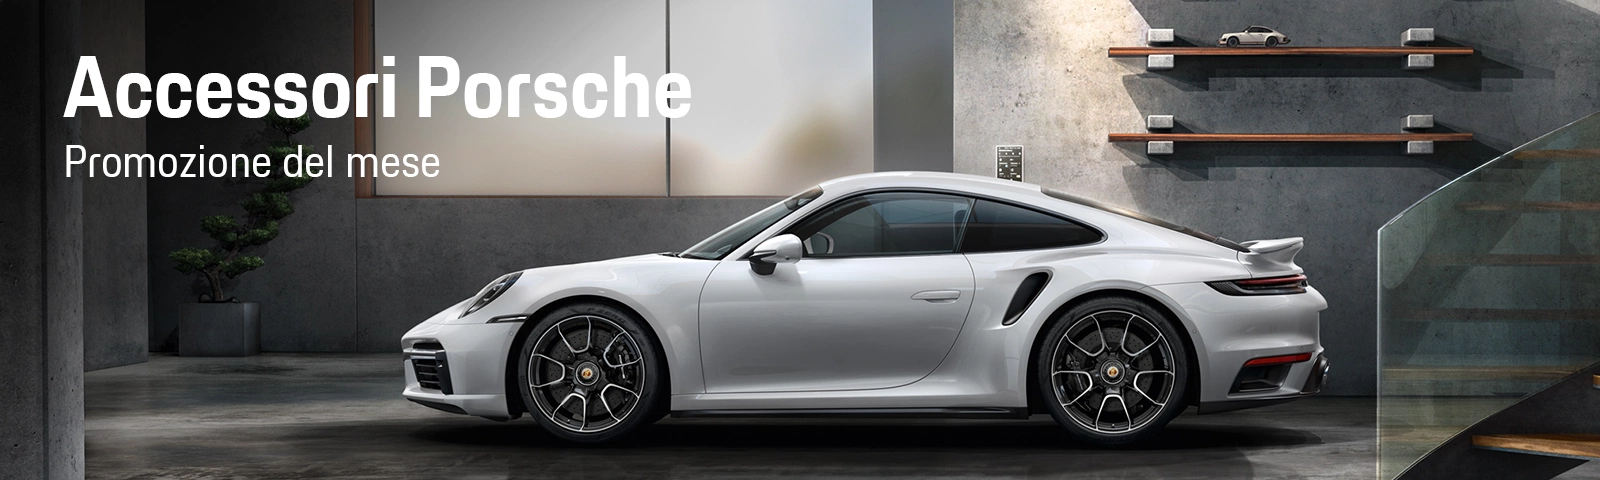 Accessori Porsche